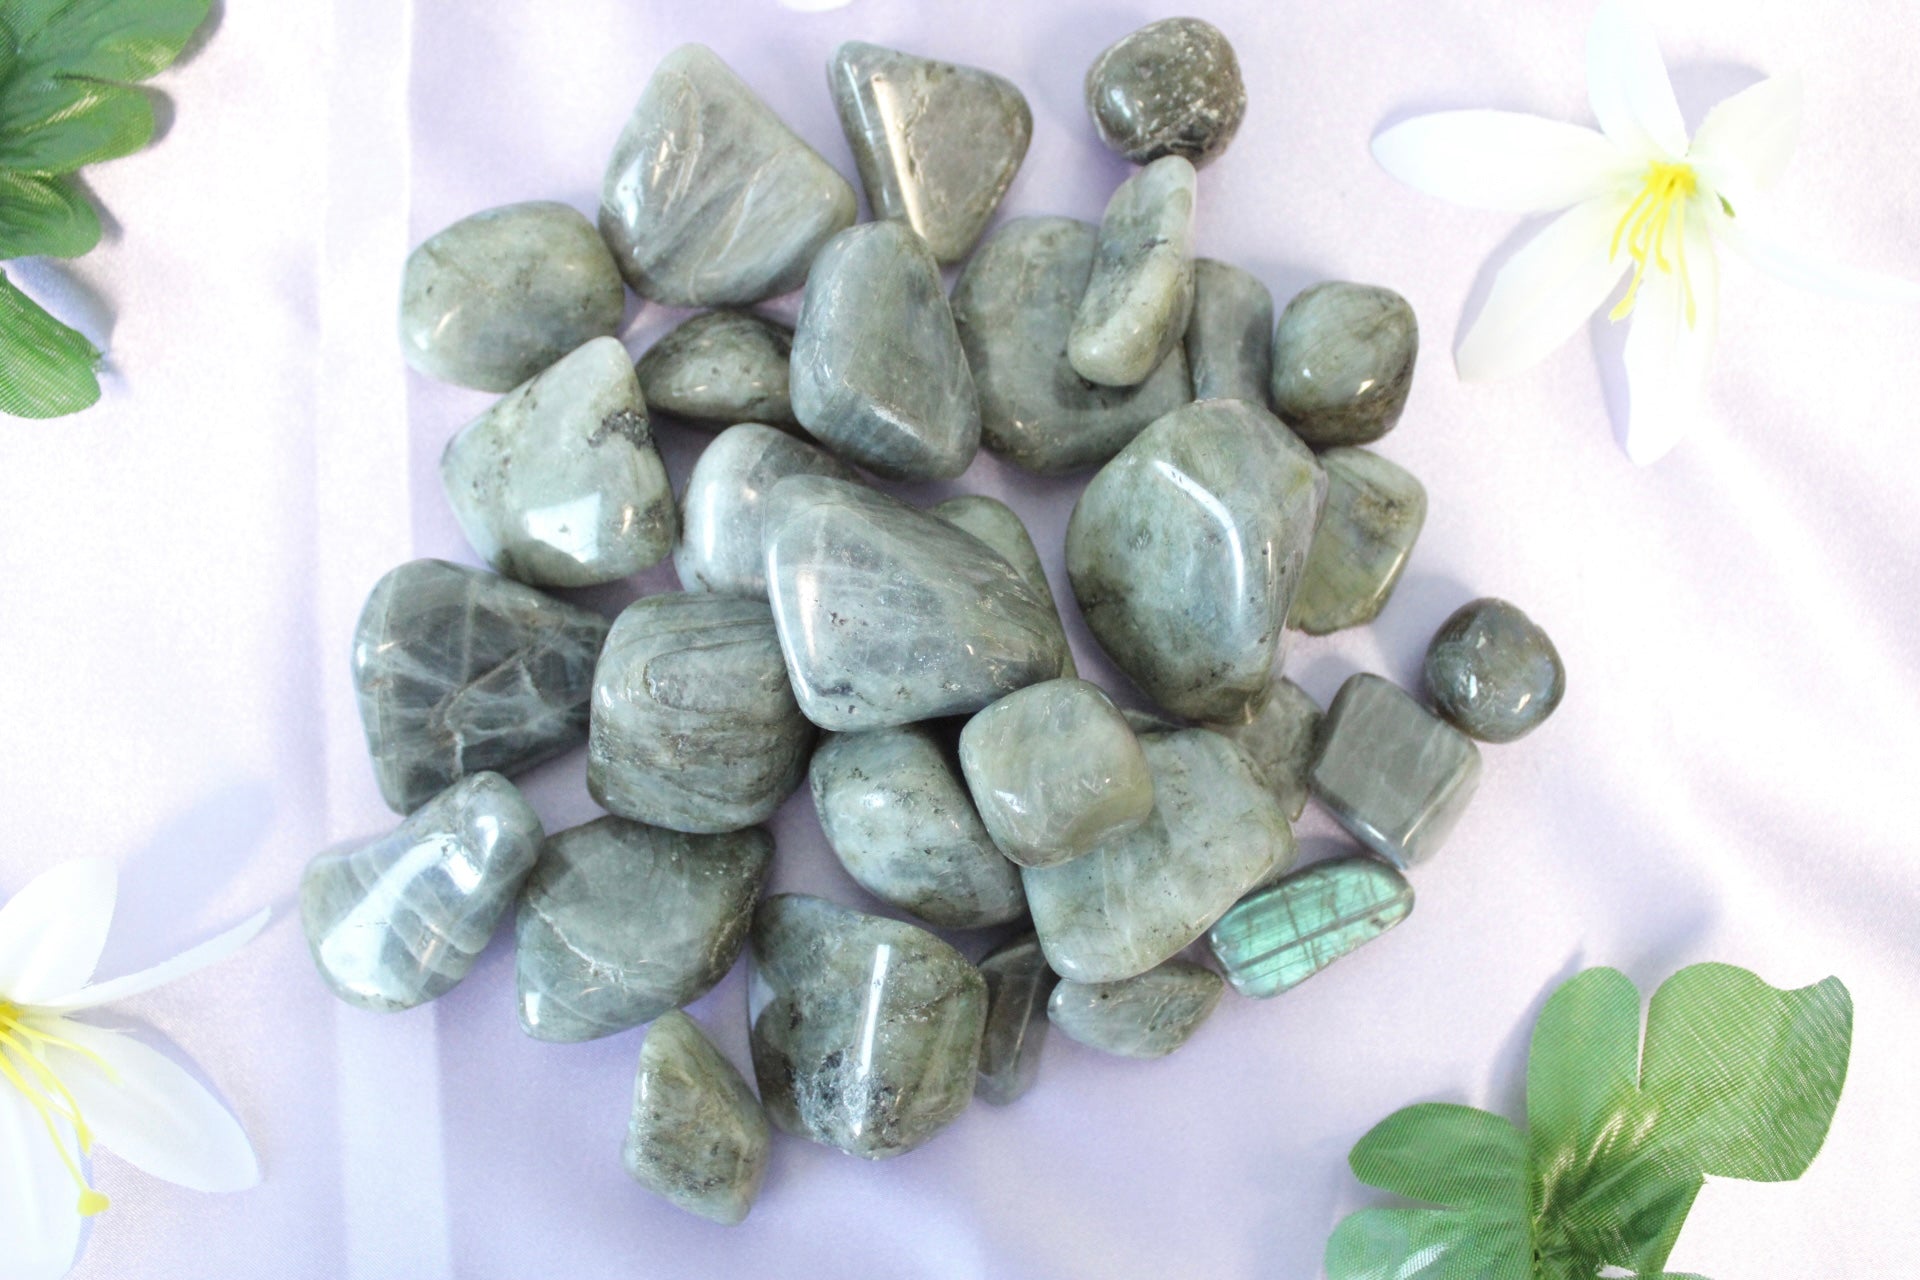 Labradorite tumbled stone